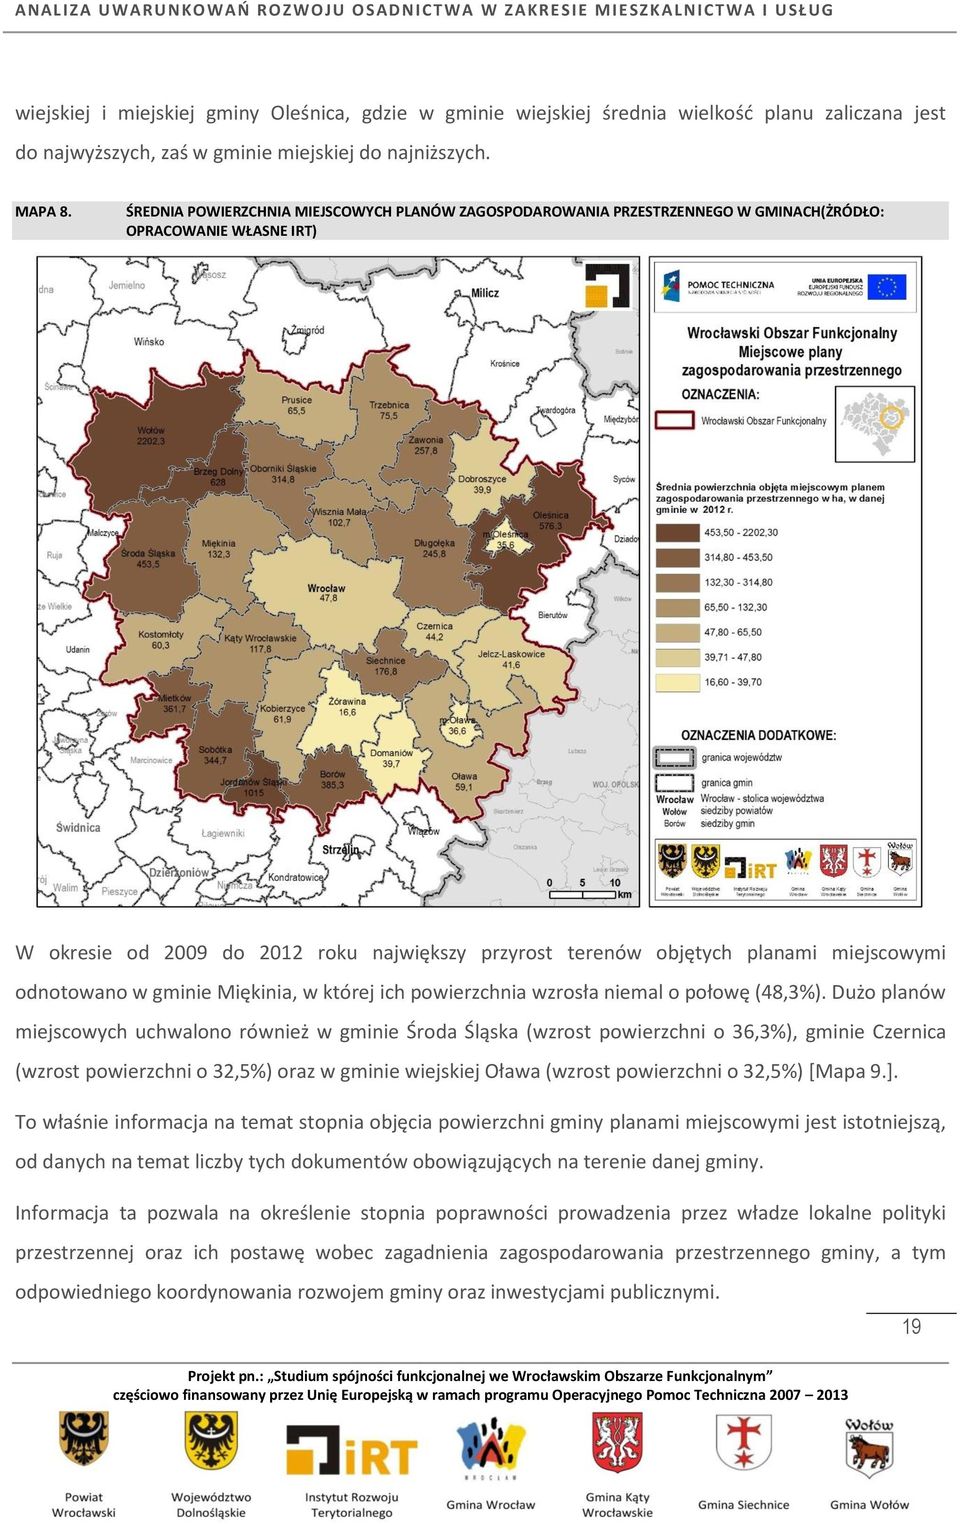 miejscowymi odnotowano w gminie Miękinia, w której ich powierzchnia wzrosła niemal o połowę (48,3%).